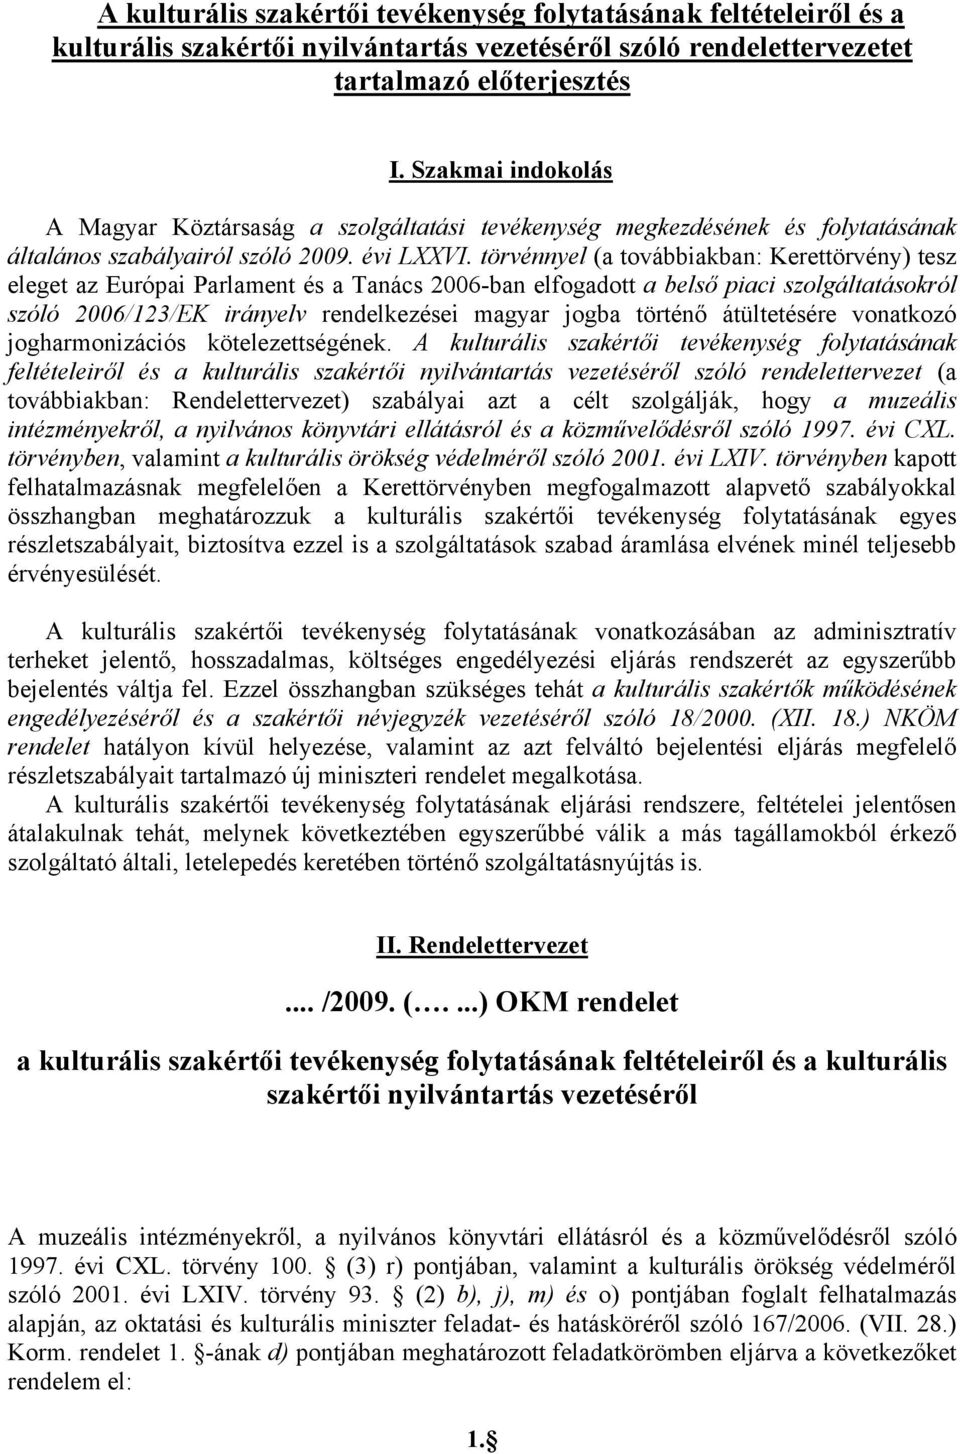 törvénnyel (a továbbiakban: Kerettörvény) tesz eleget az Európai Parlament és a Tanács 2006-ban elfogadott a belső piaci szolgáltatásokról szóló 2006/123/EK irányelv rendelkezései magyar jogba